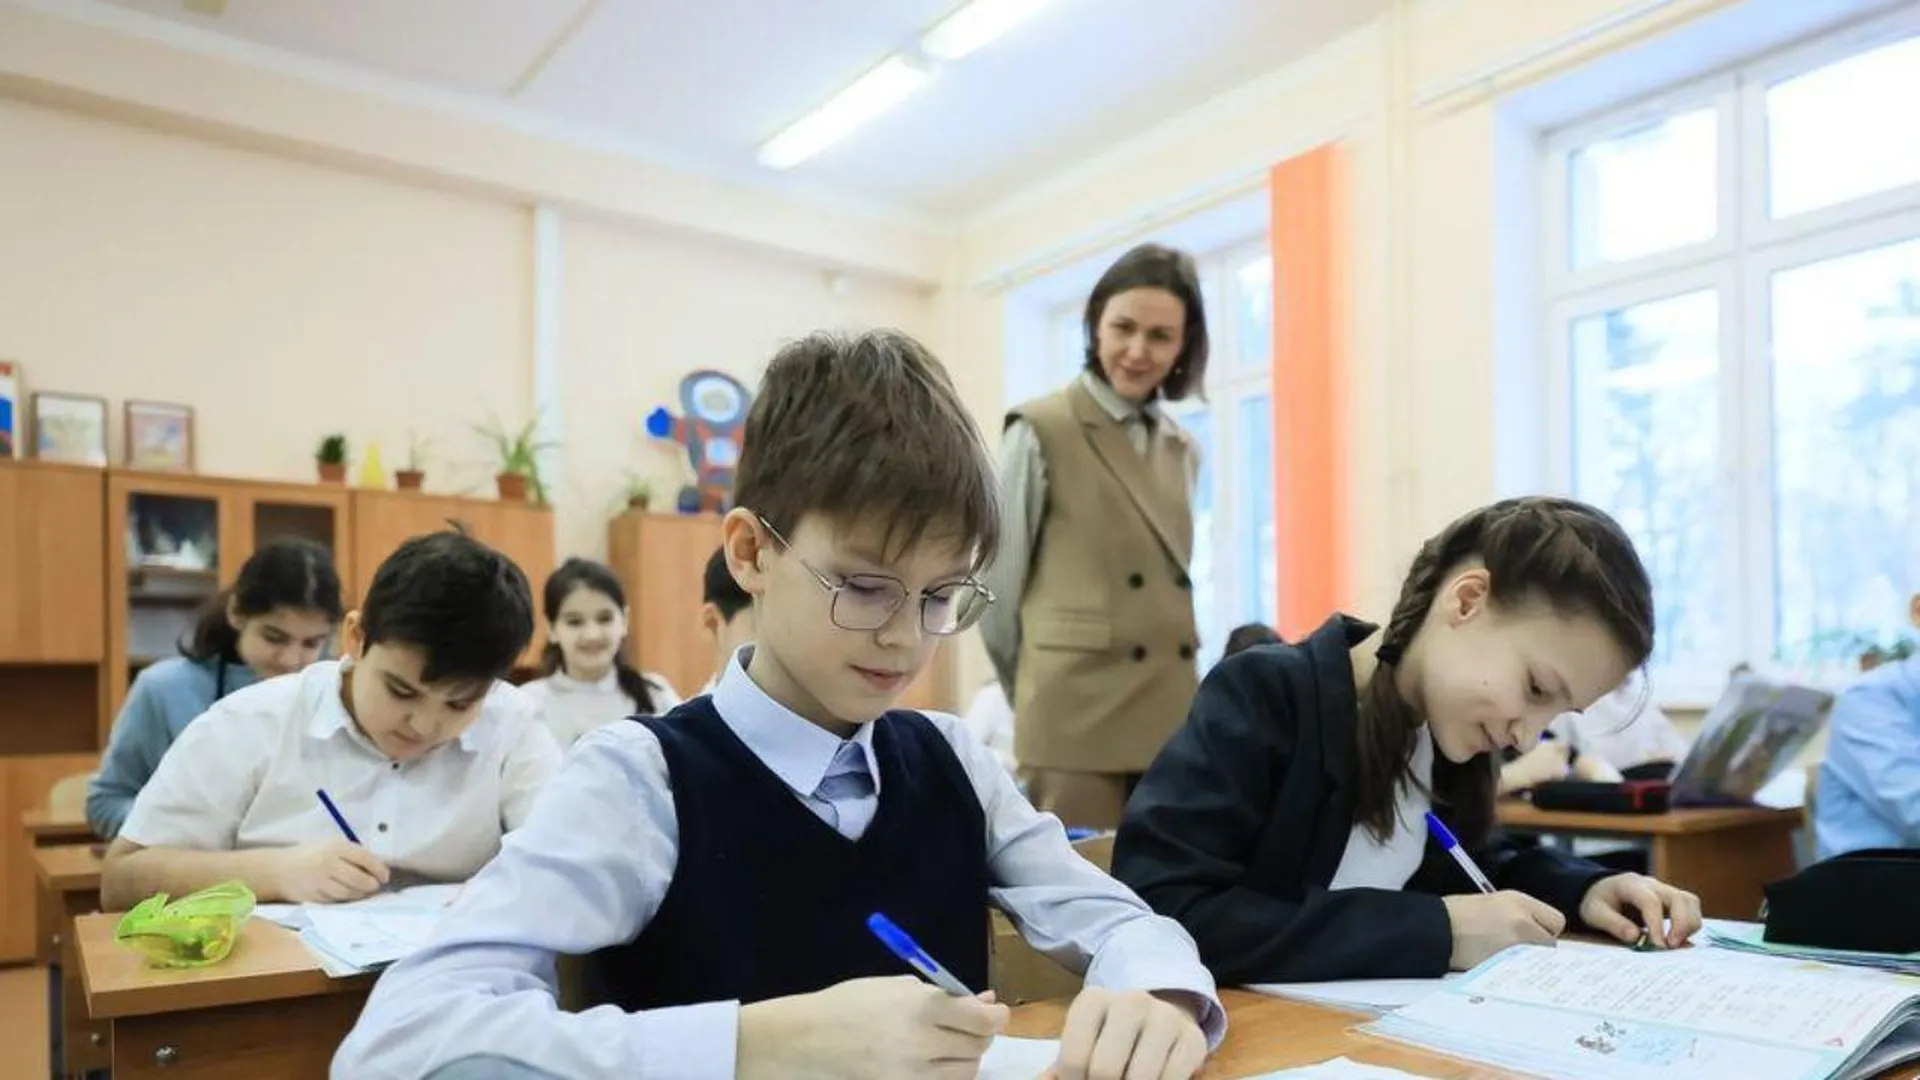 За этот месяц уже более двух тысяч учителей в Подмосковье получили компенсацию аренды жилья